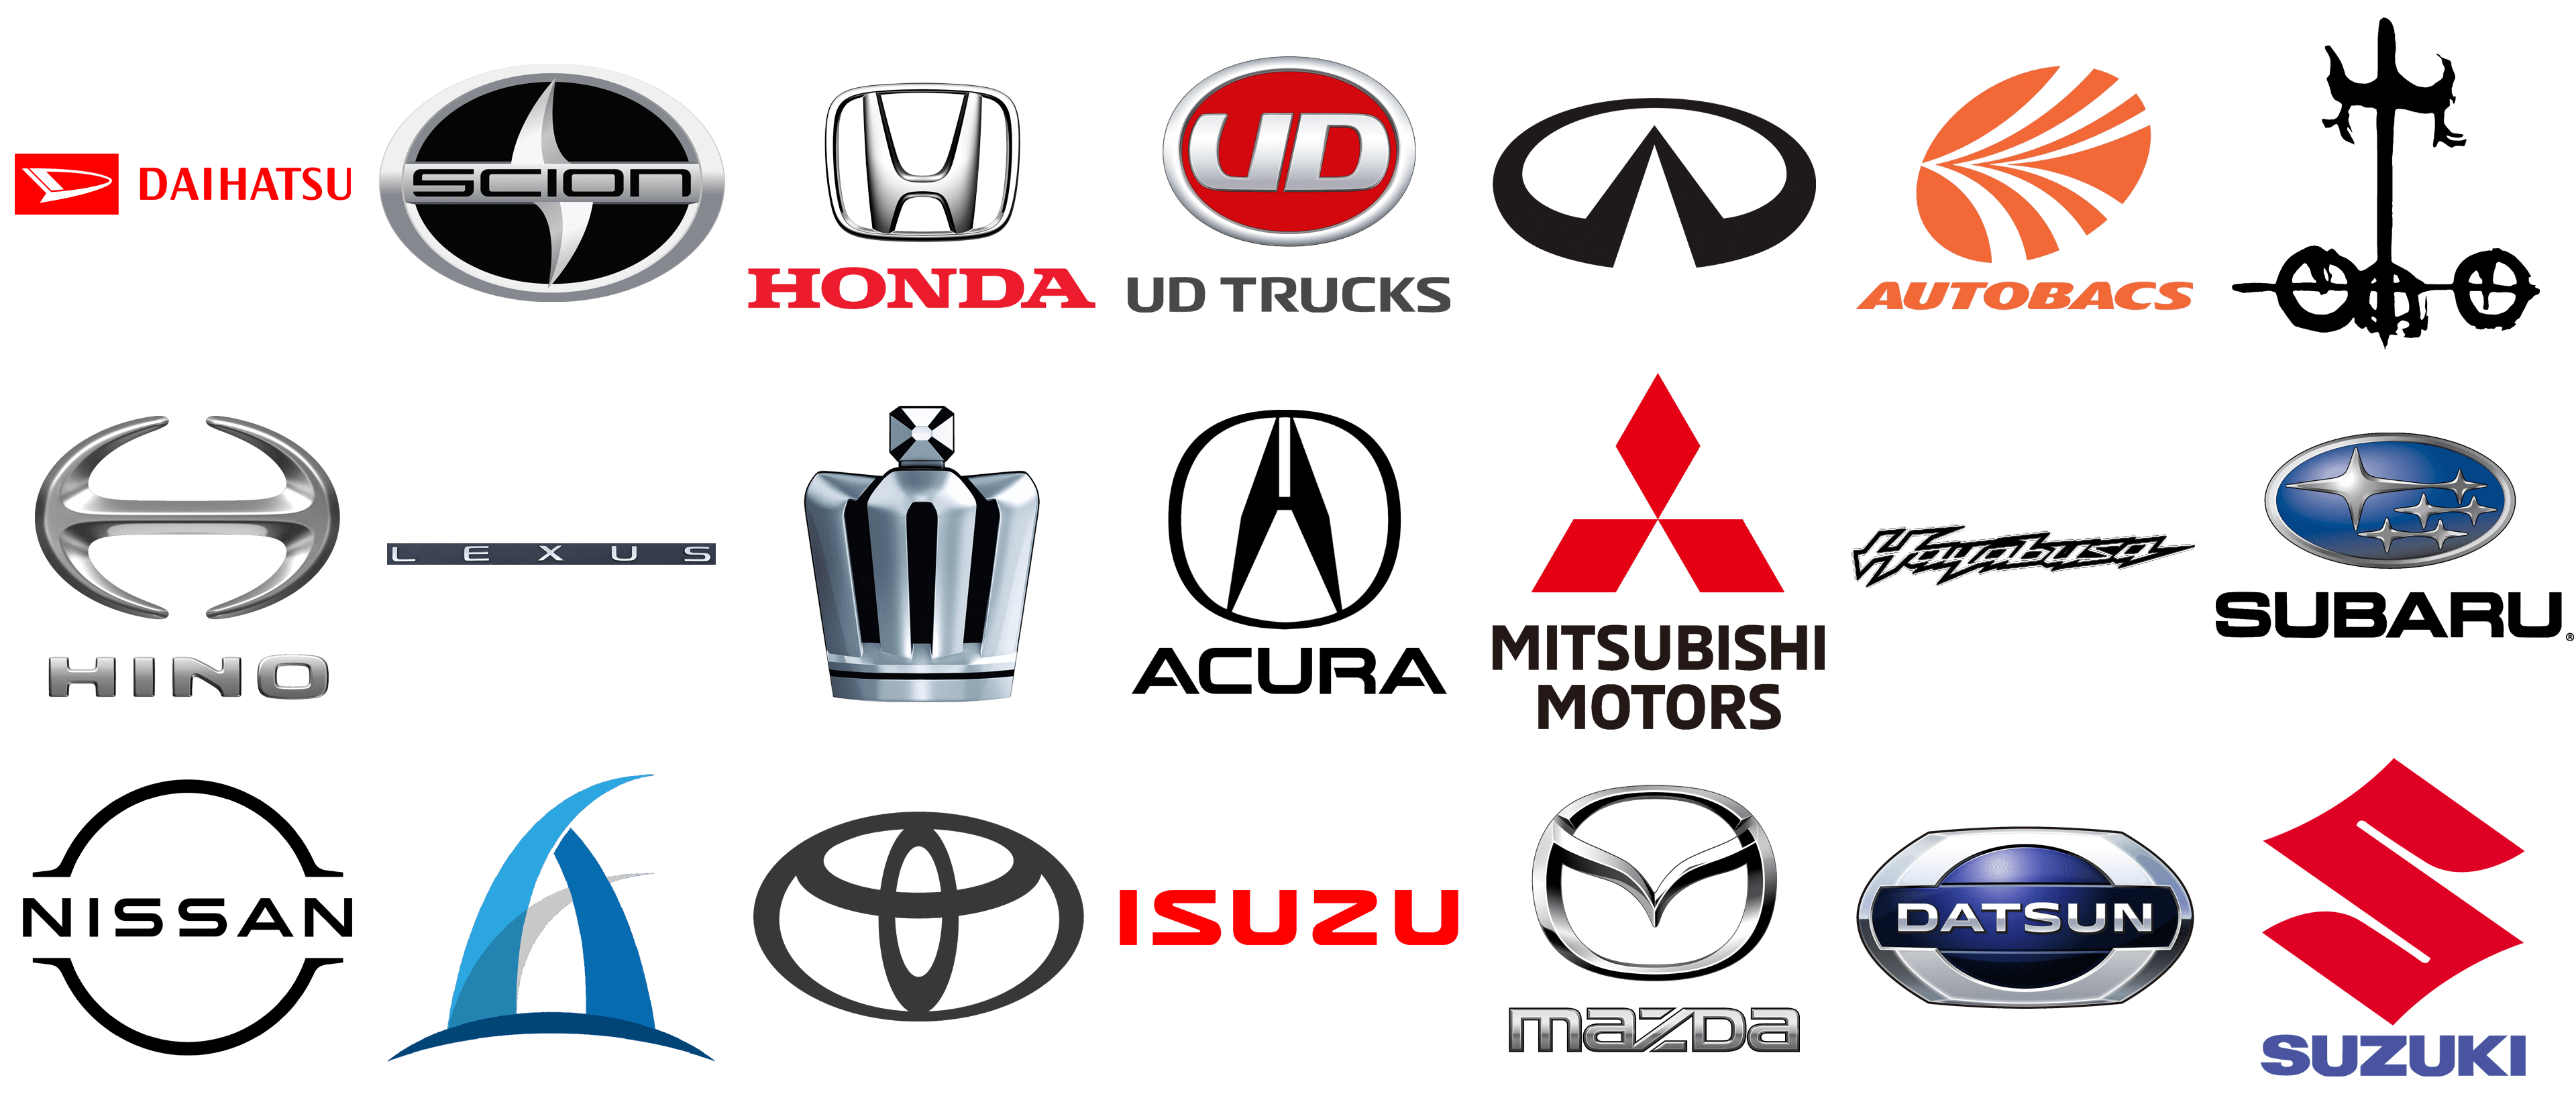 Japanese Car Brands manufacturer car companies, logos